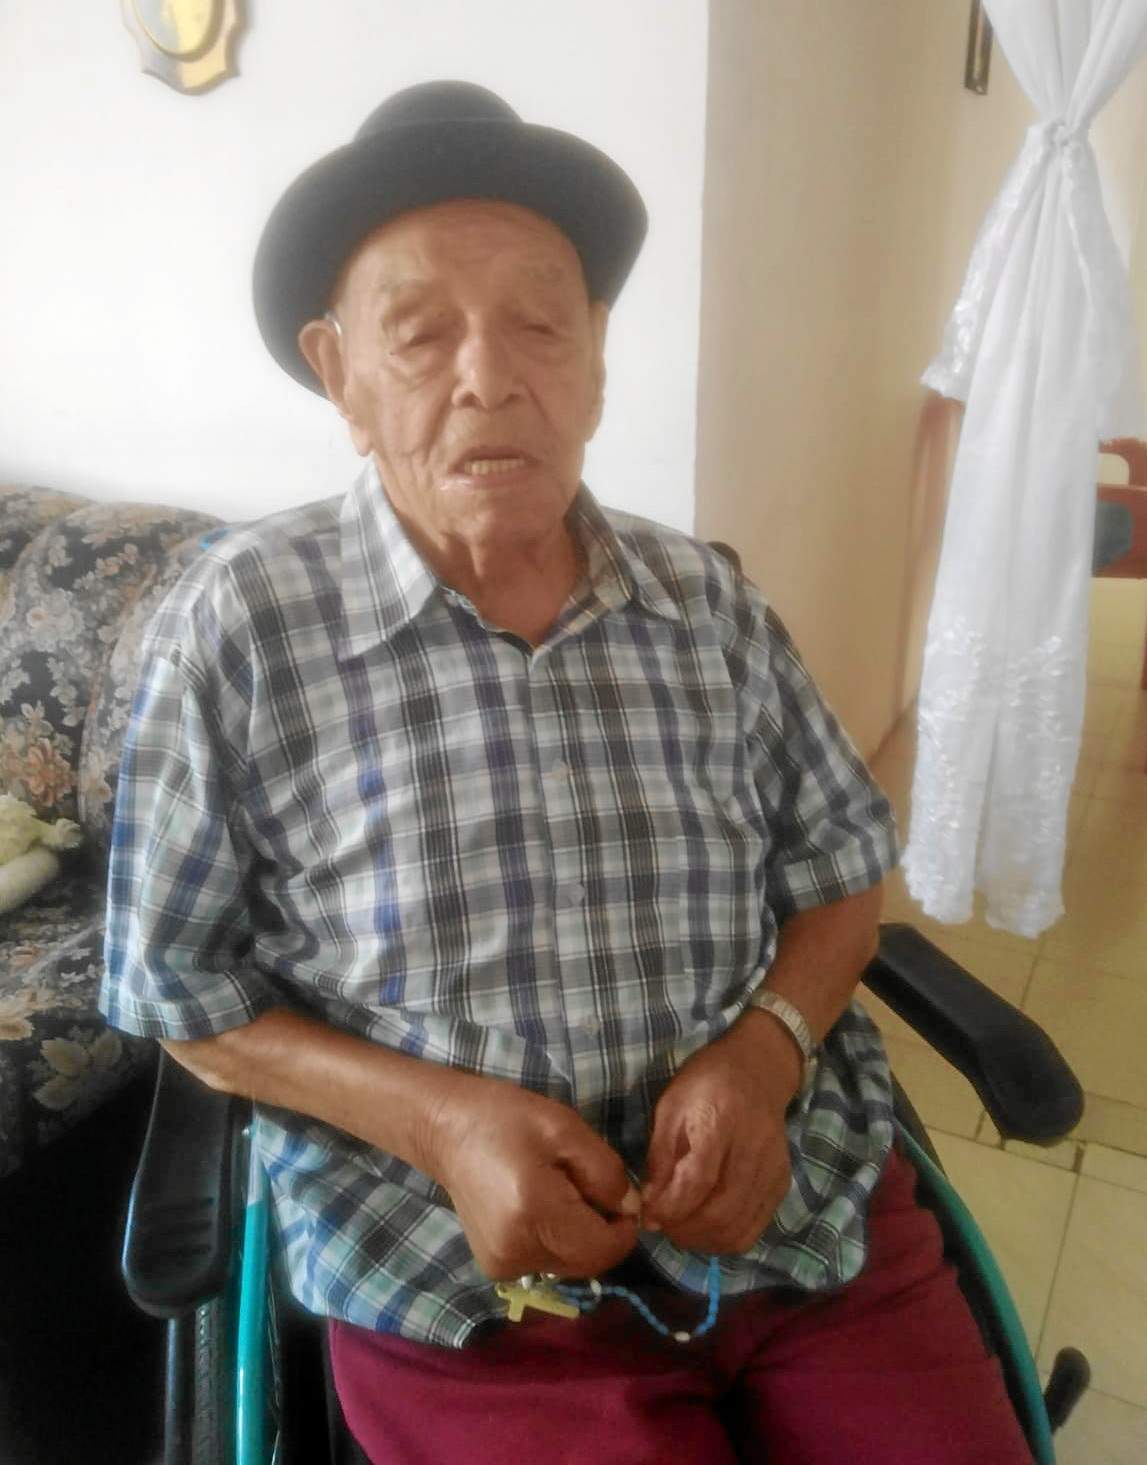 Ramón Antonio Marulanda Carvajal, natural de Manzanares (Caldas), falleció a los 101 años de vida. Sus exequias se llevaron a cabo en Jardines de la Esperanza, en Manizales.